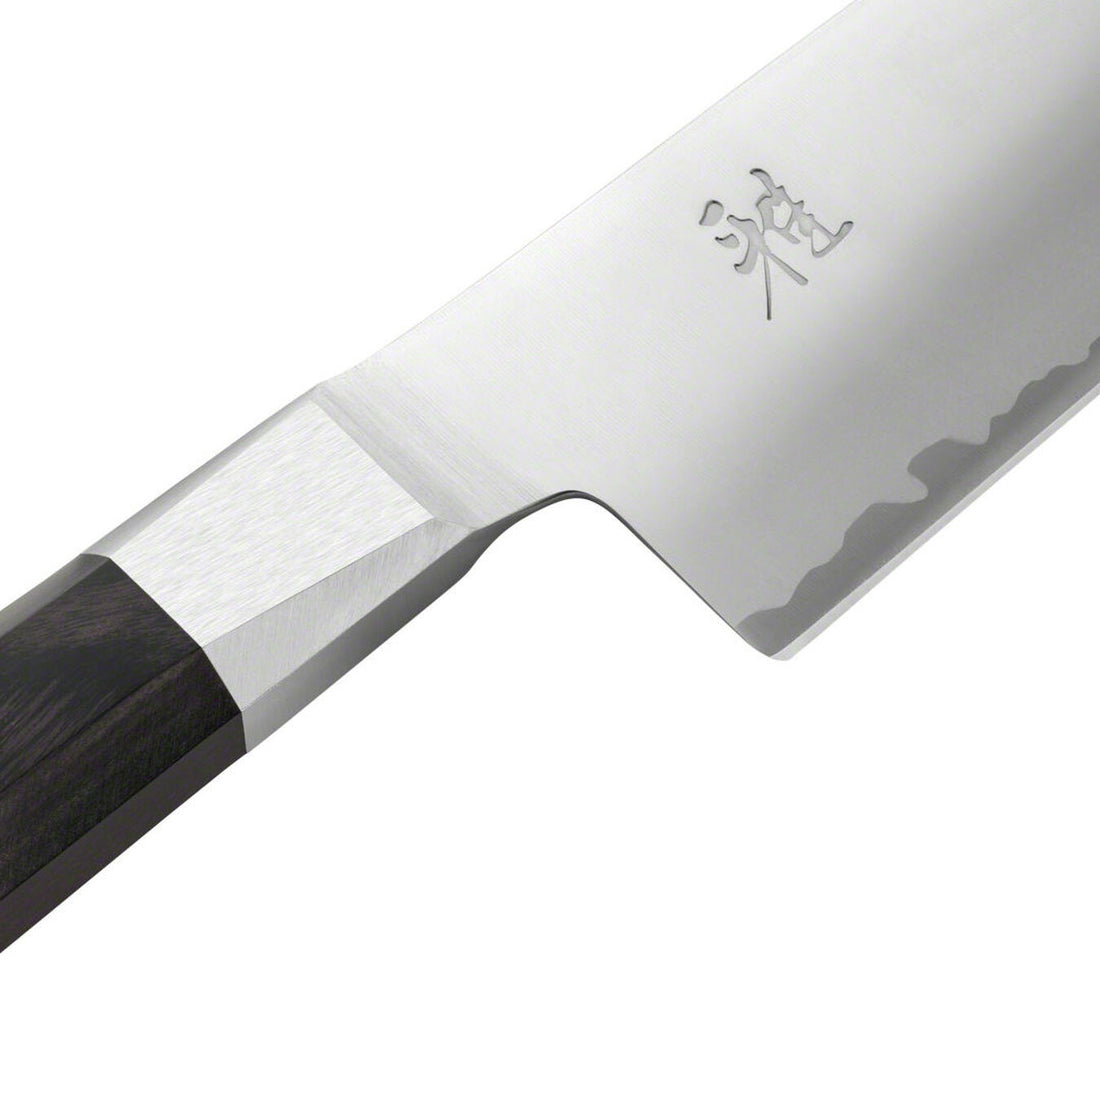 Miyabi Koh,  3.5&quot; Paring Knife